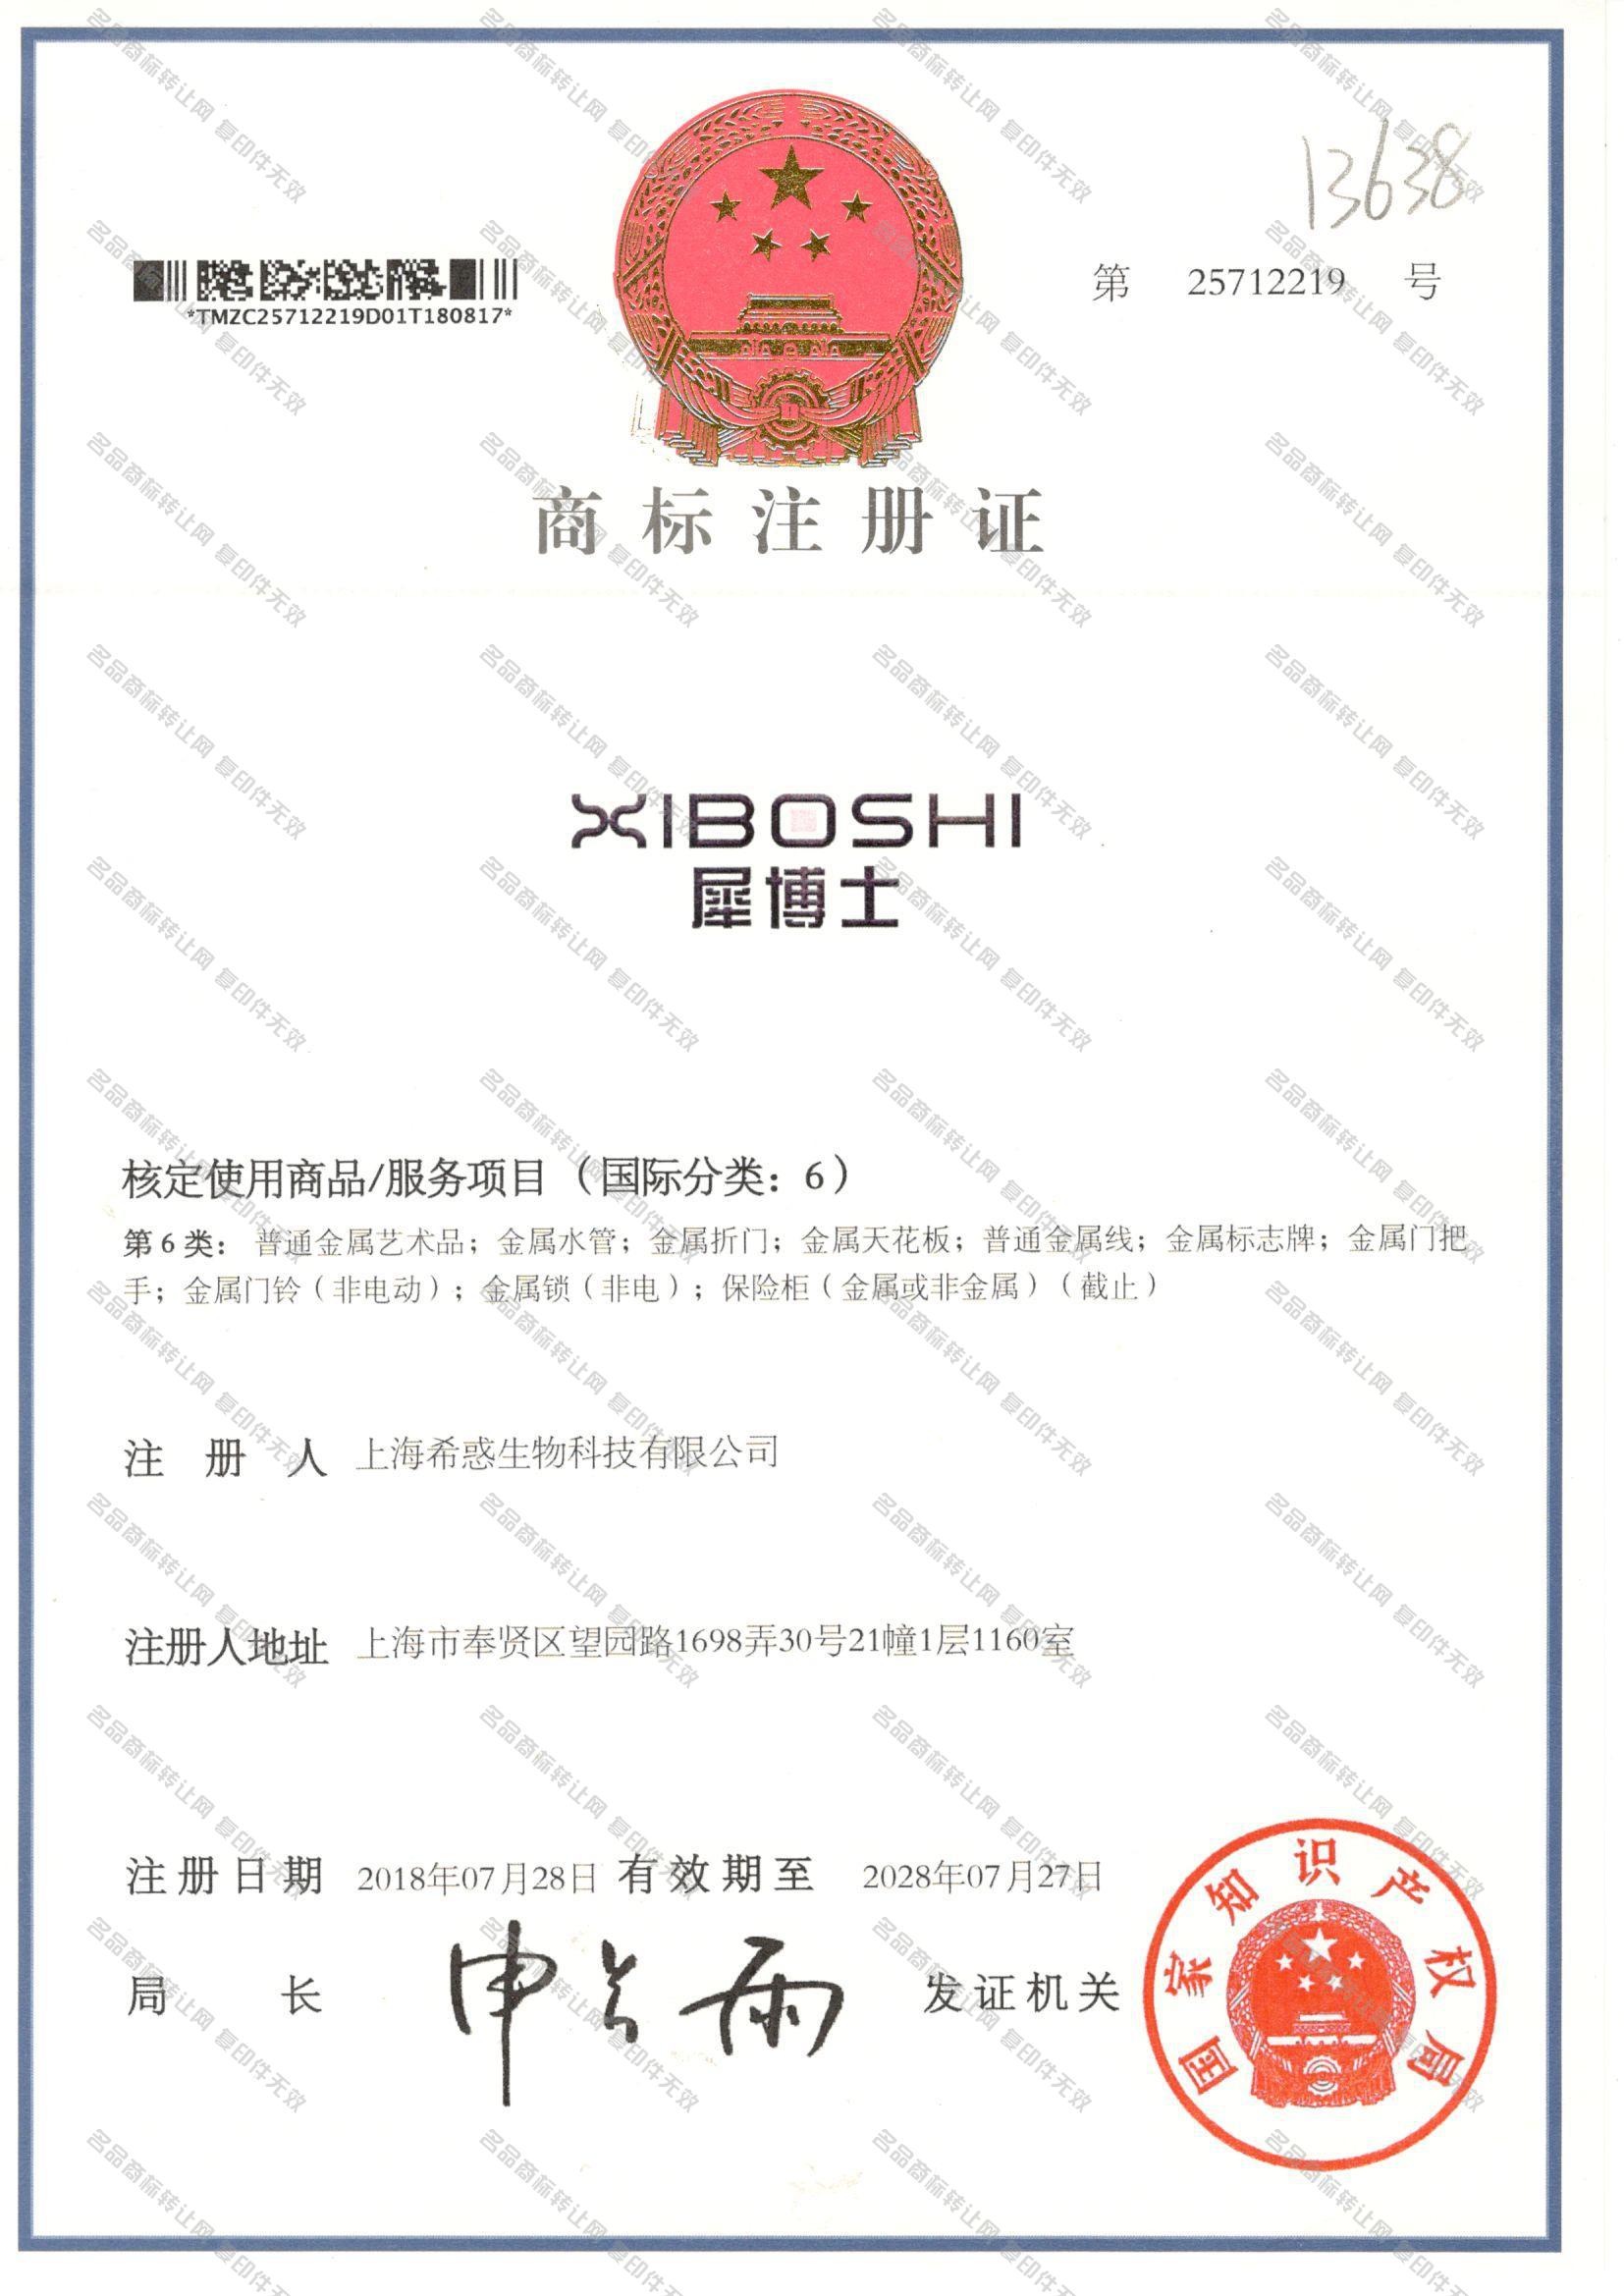 犀博士 XIBOSHI注册证